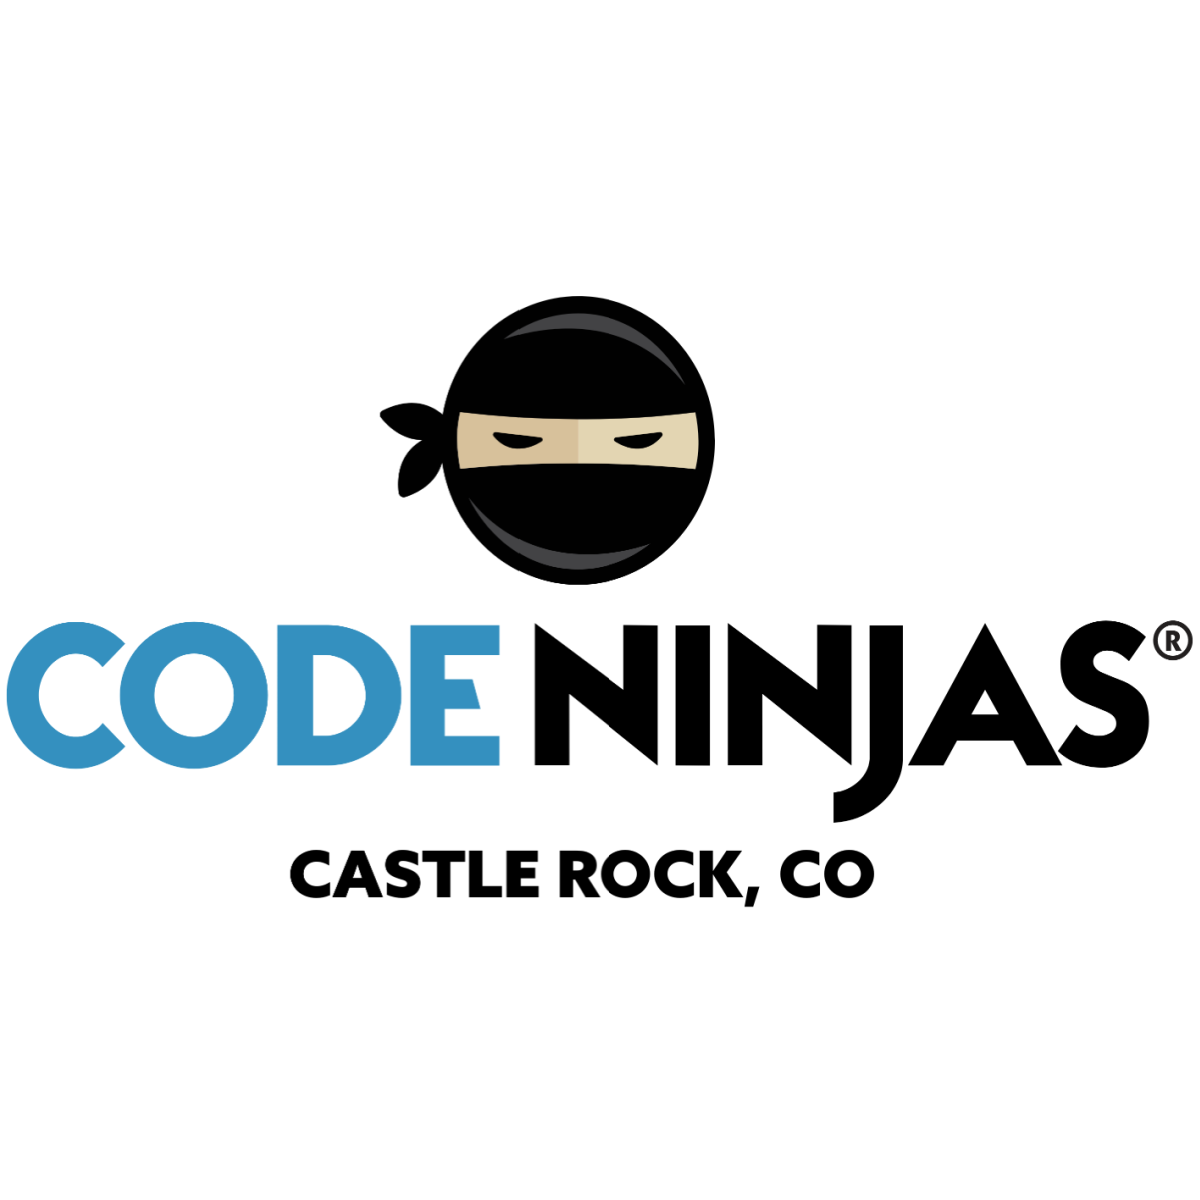 Code Ninjas Castle Rock logo